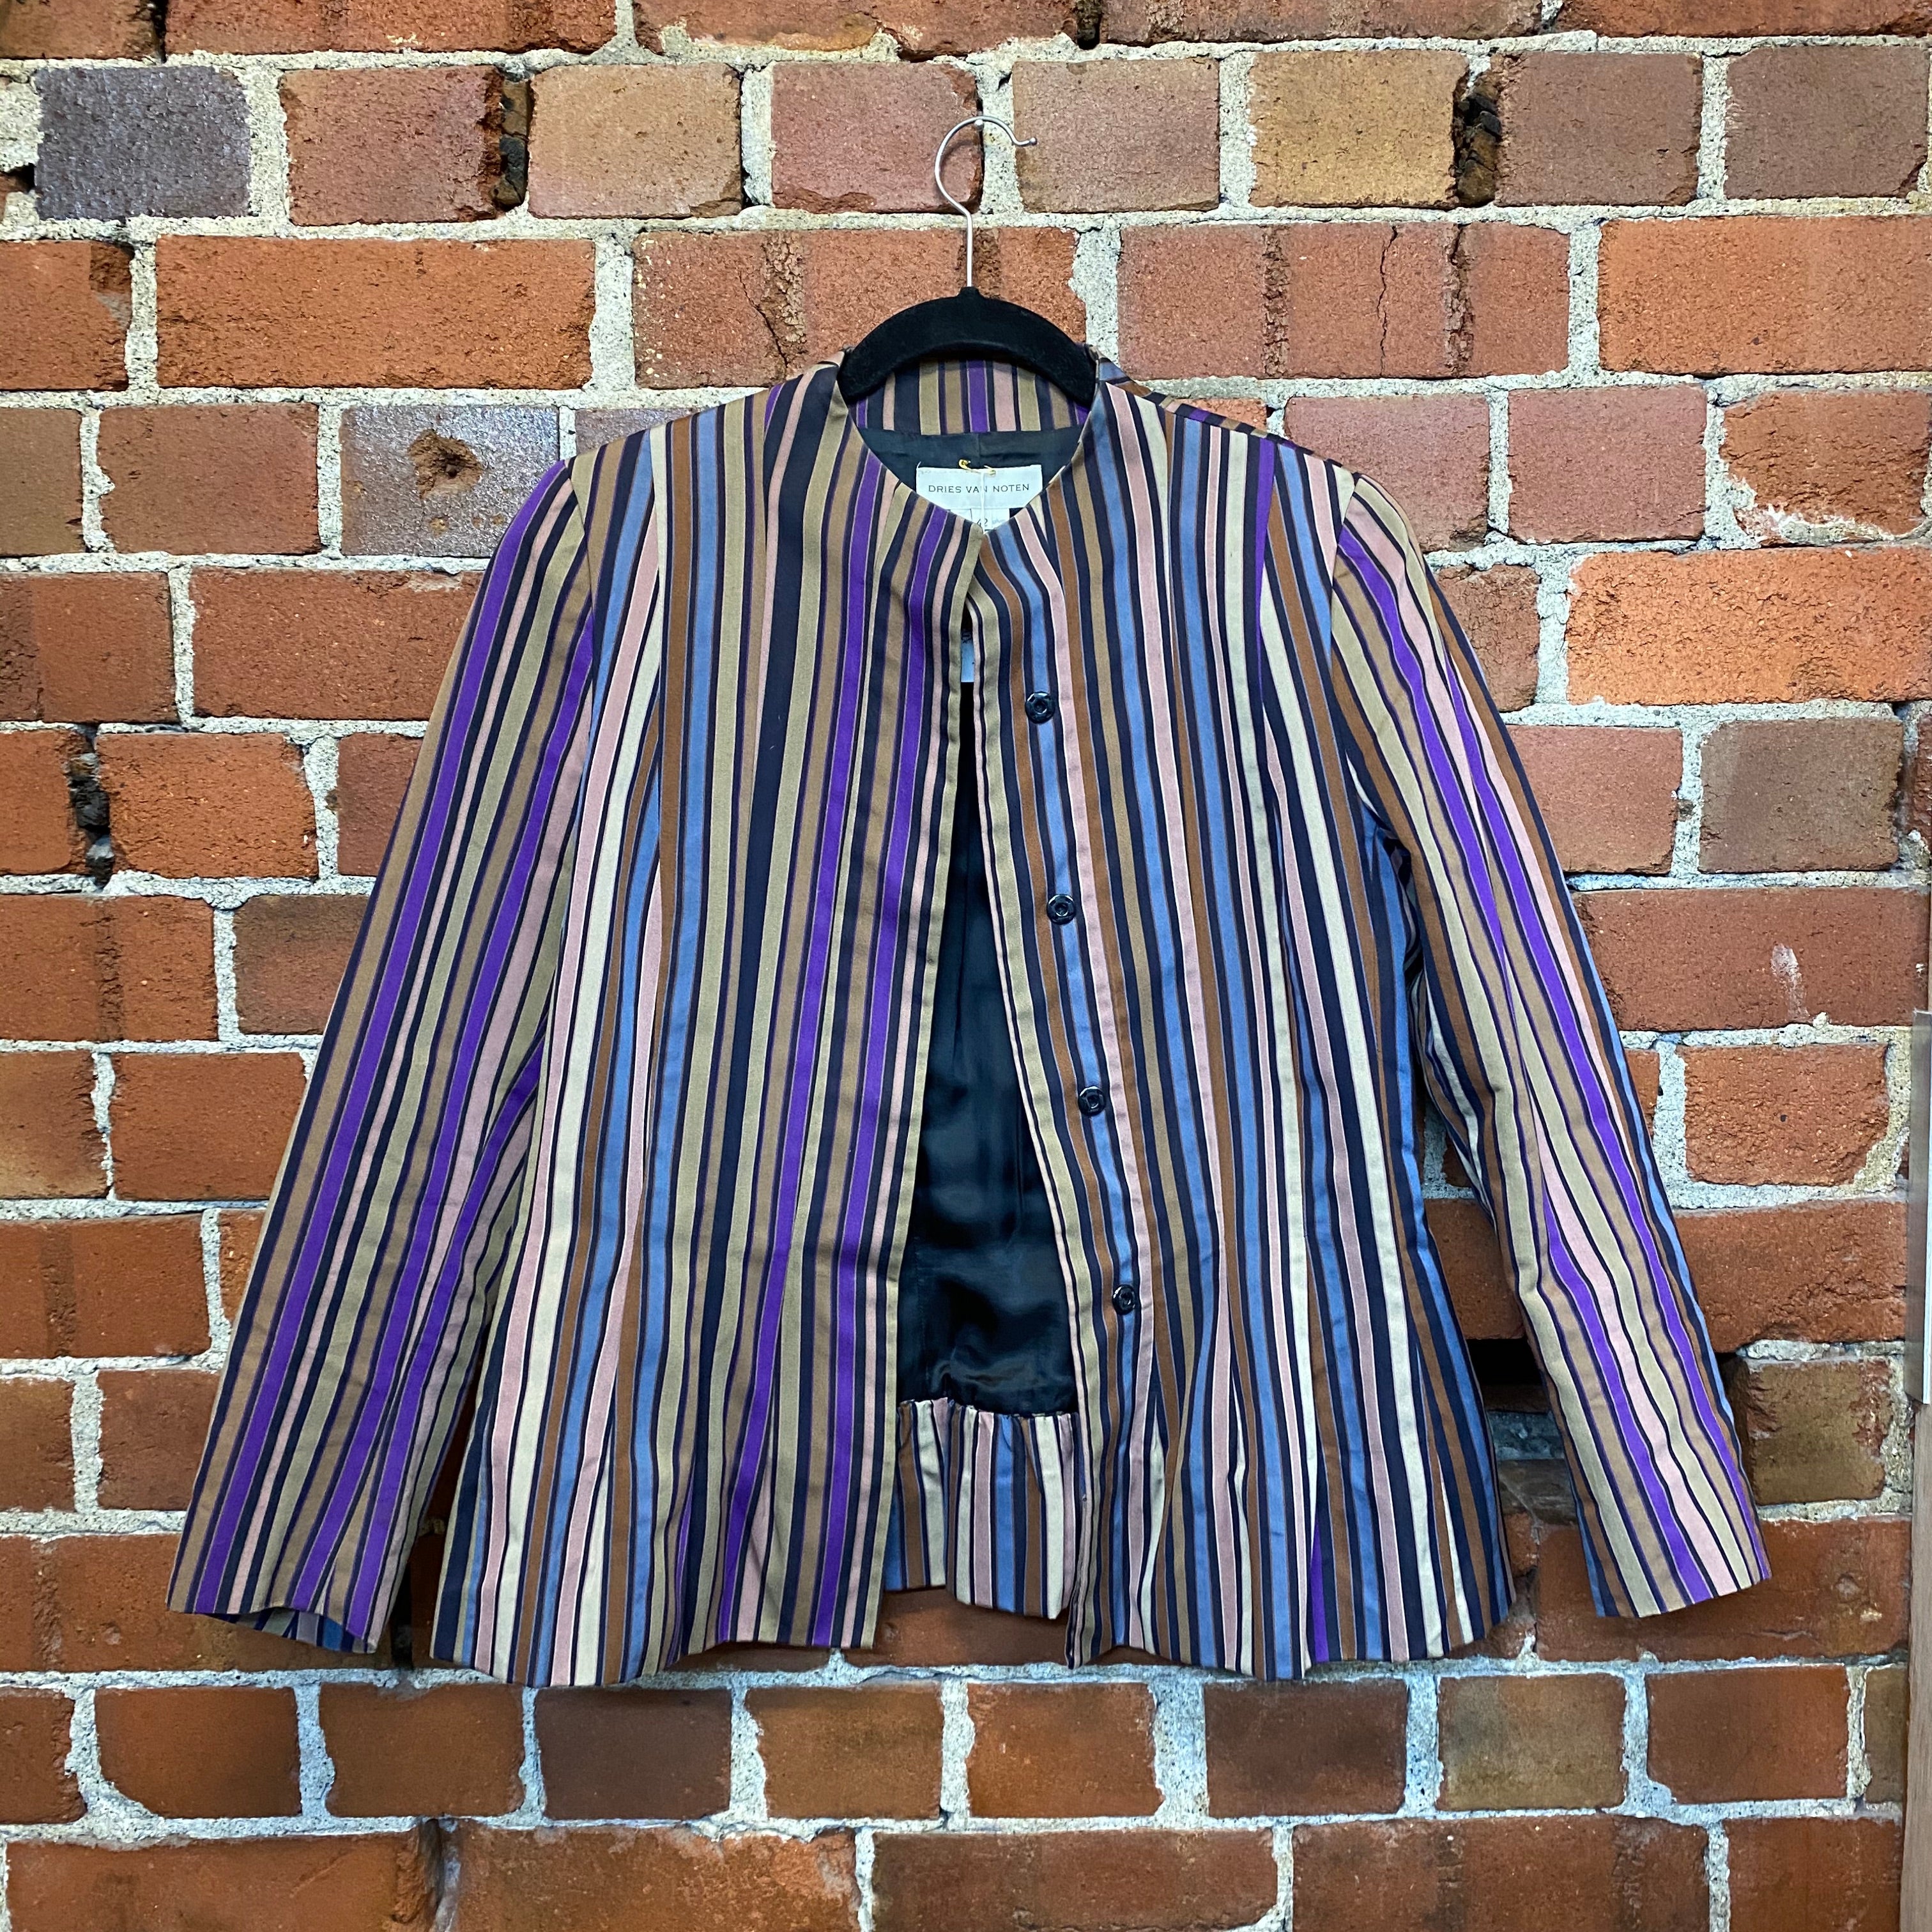 DRIES VAN NOTEN 1990s striped jacket